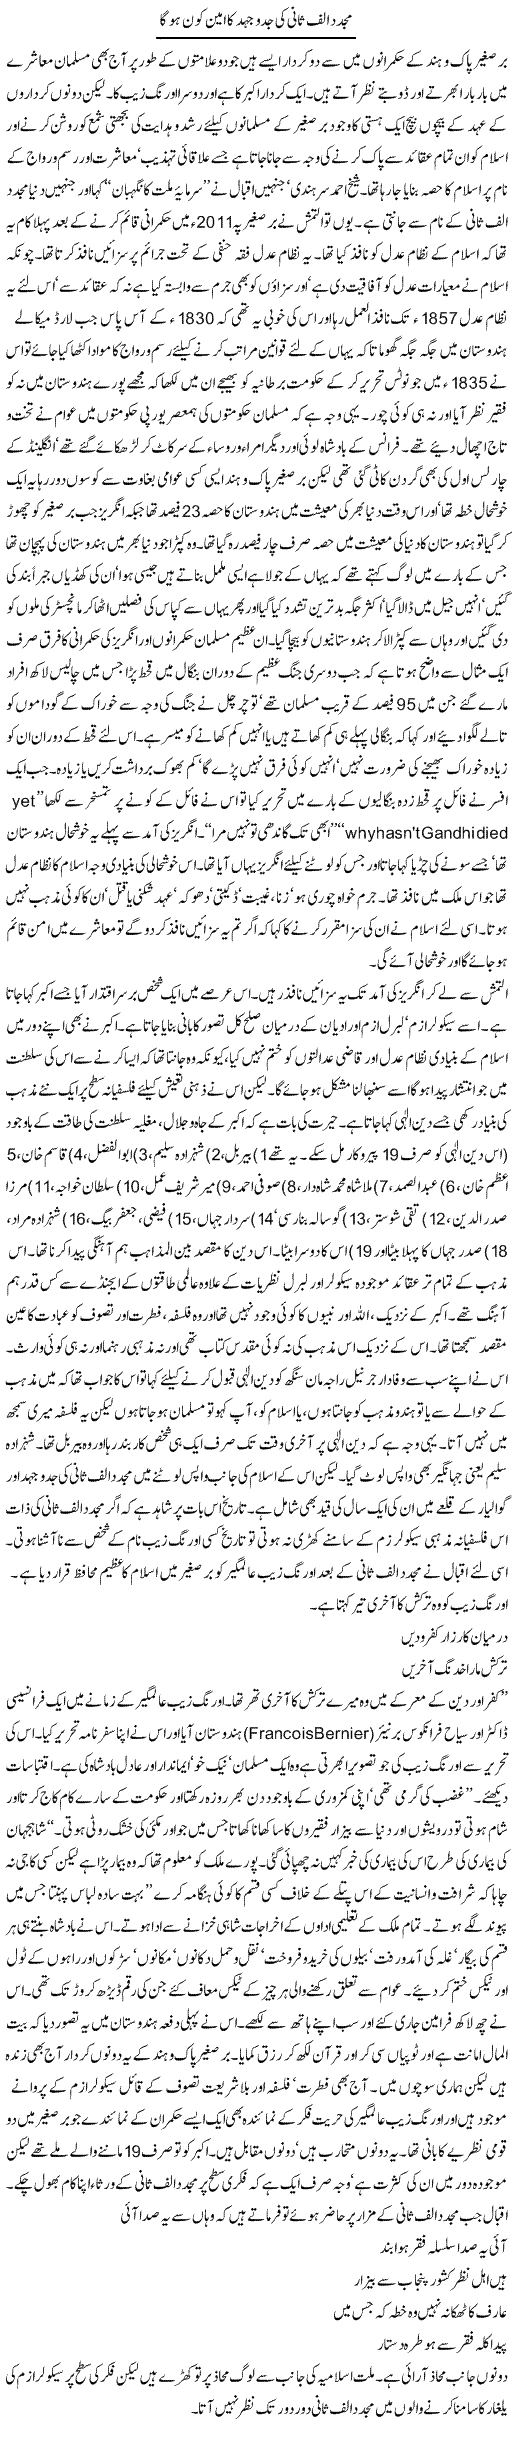 Mujaddid alif sani ki jad-o-jehad ka ameen kon ho ga | Orya Maqbool Jan | Daily Urdu Columns